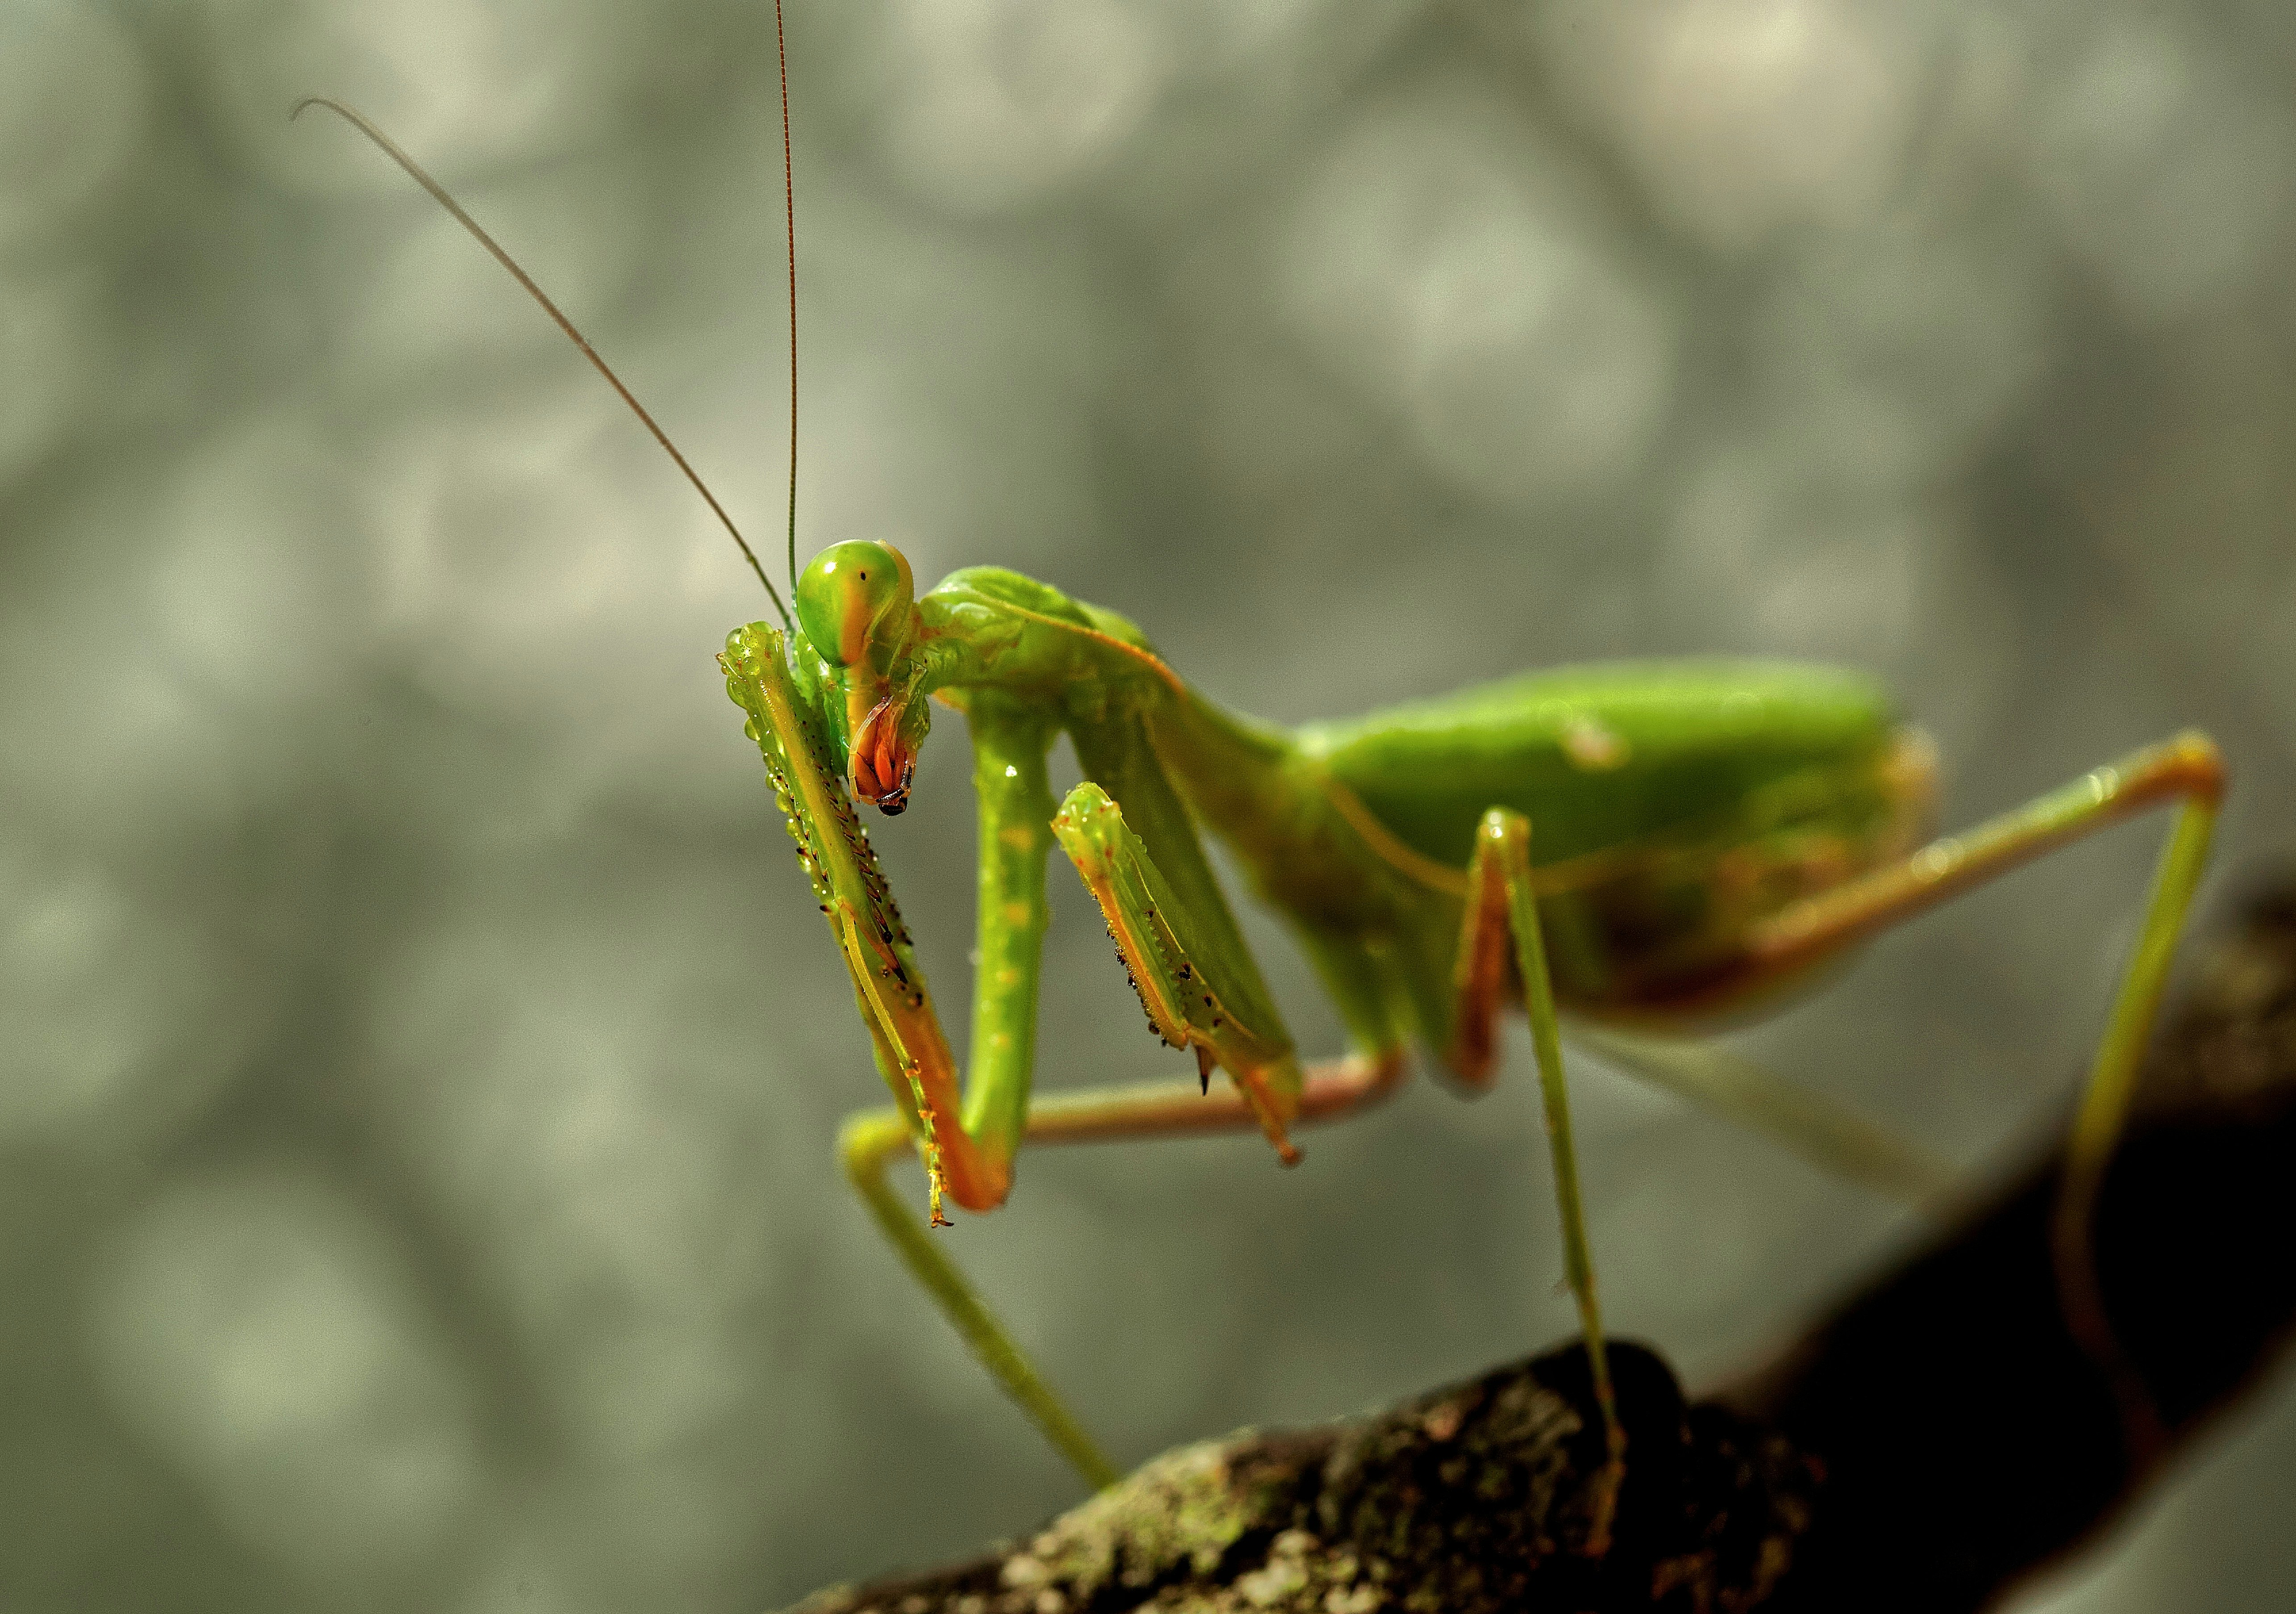 green praying mantis on gray surface